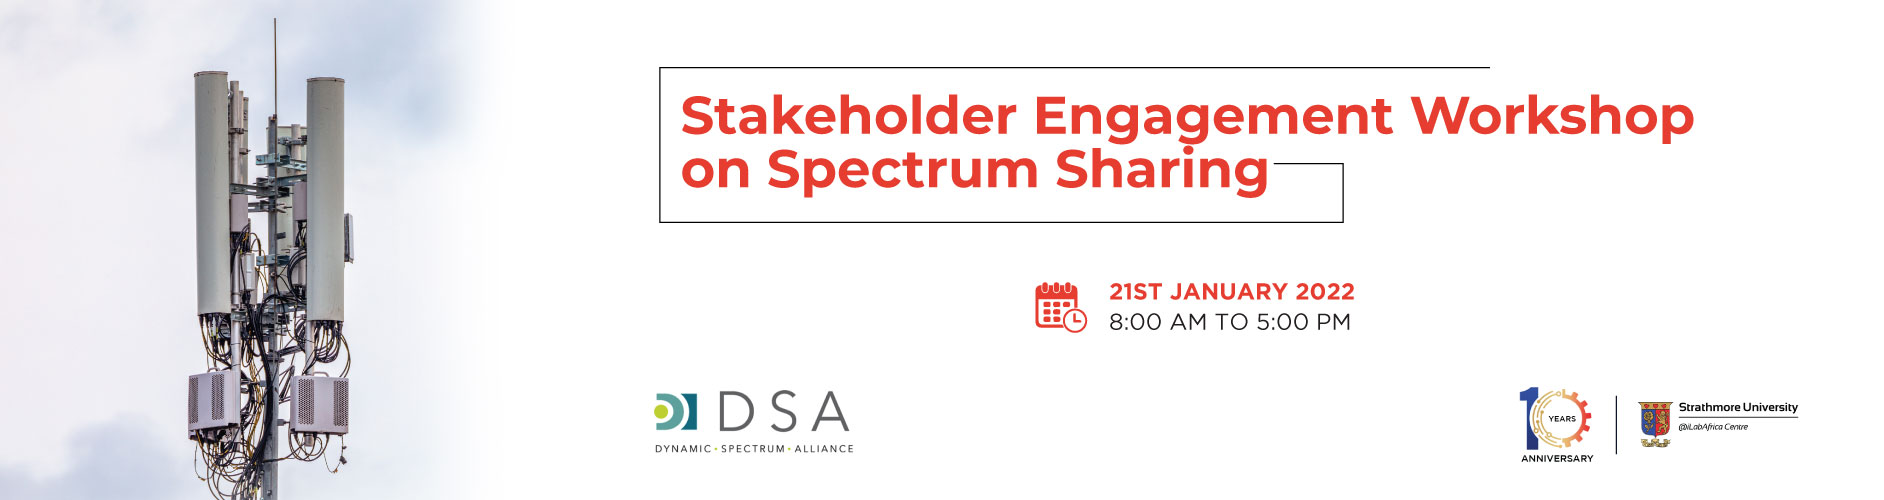 Stakeholder-engagement-banner